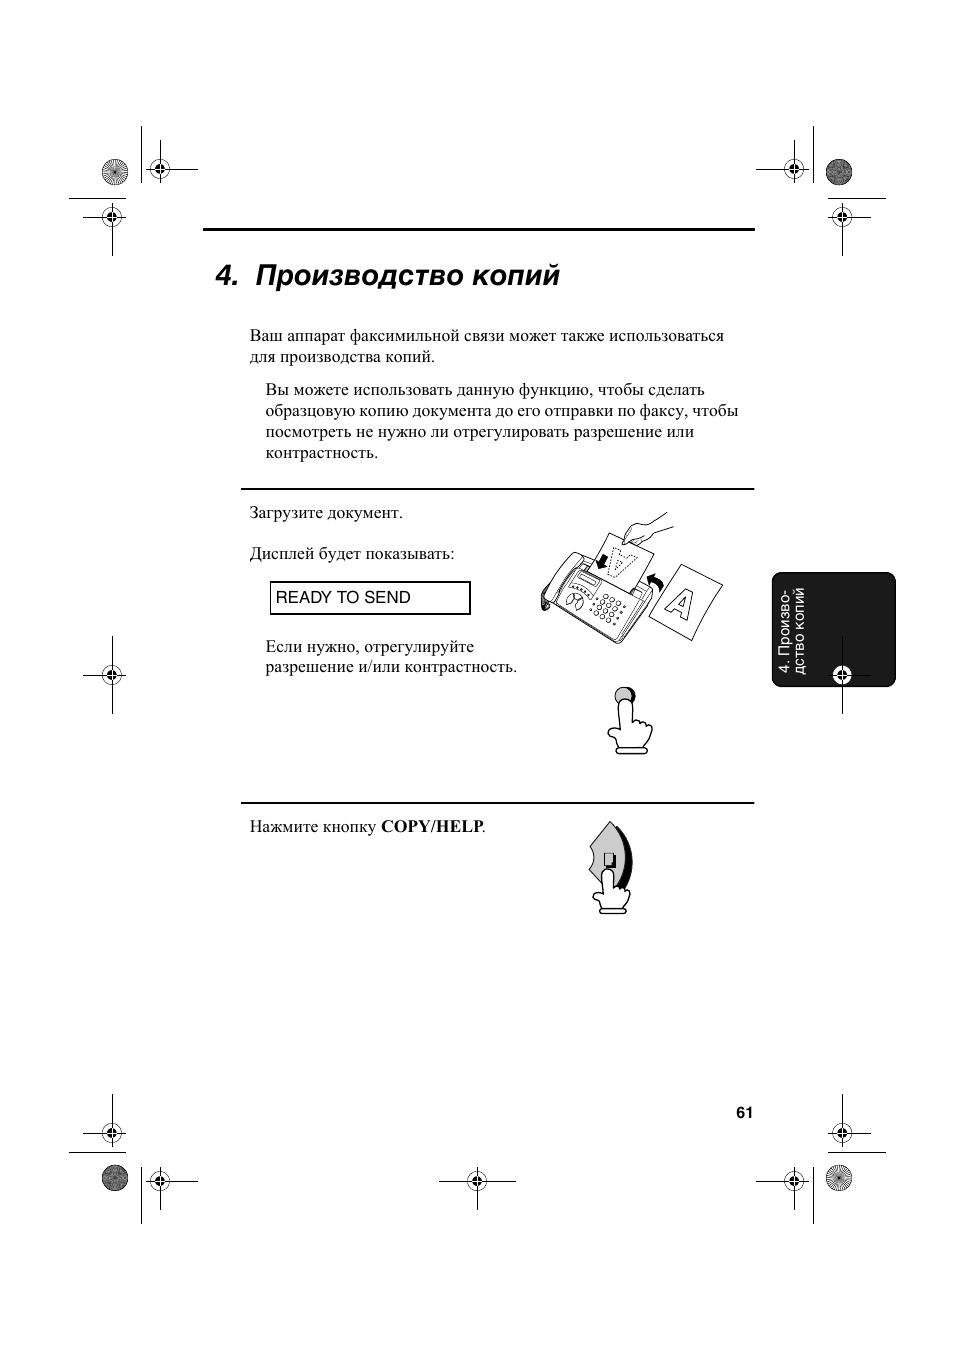 Производство копий | Инструкция по эксплуатации Sharp FO-50 | Страница 62 / 92